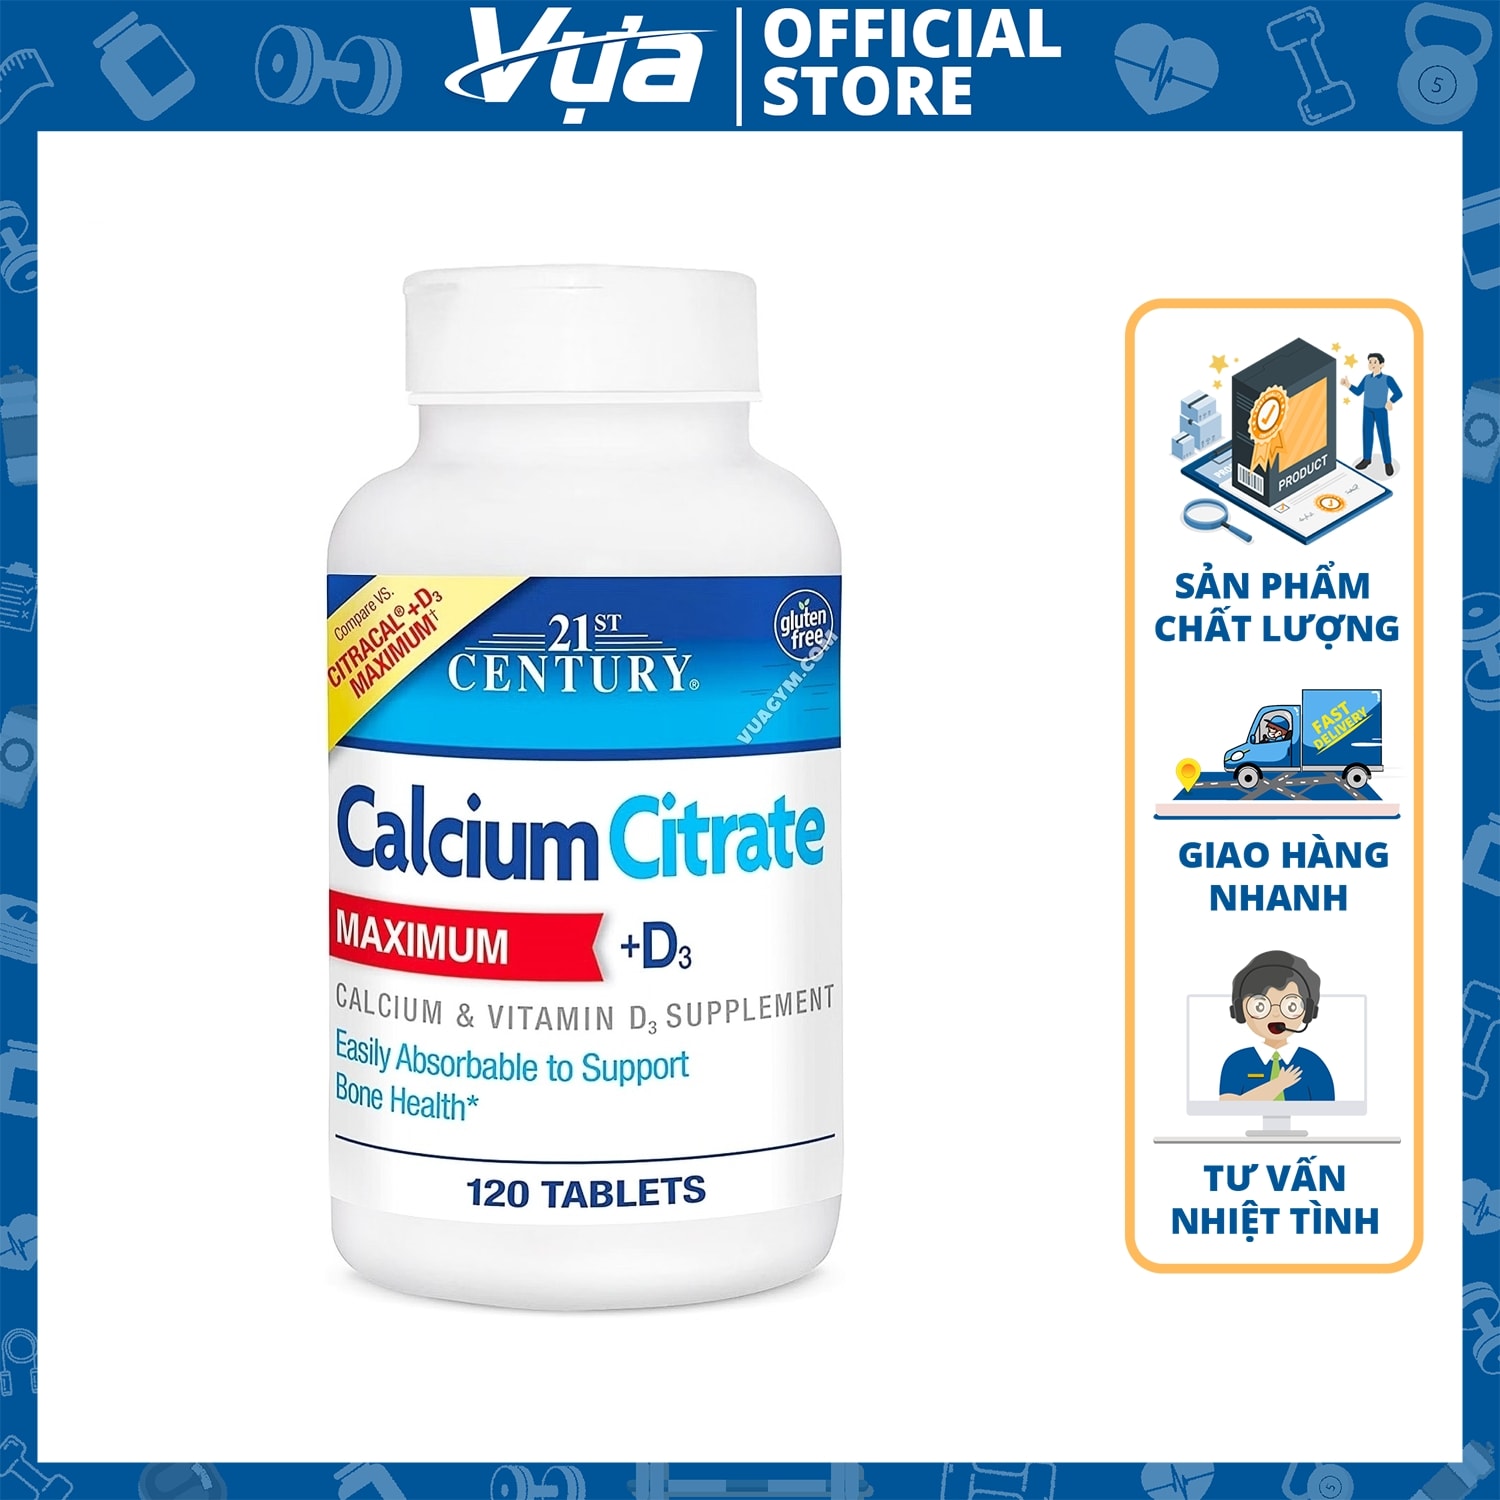 21st Century - Calcium Citrate Maximum + D3